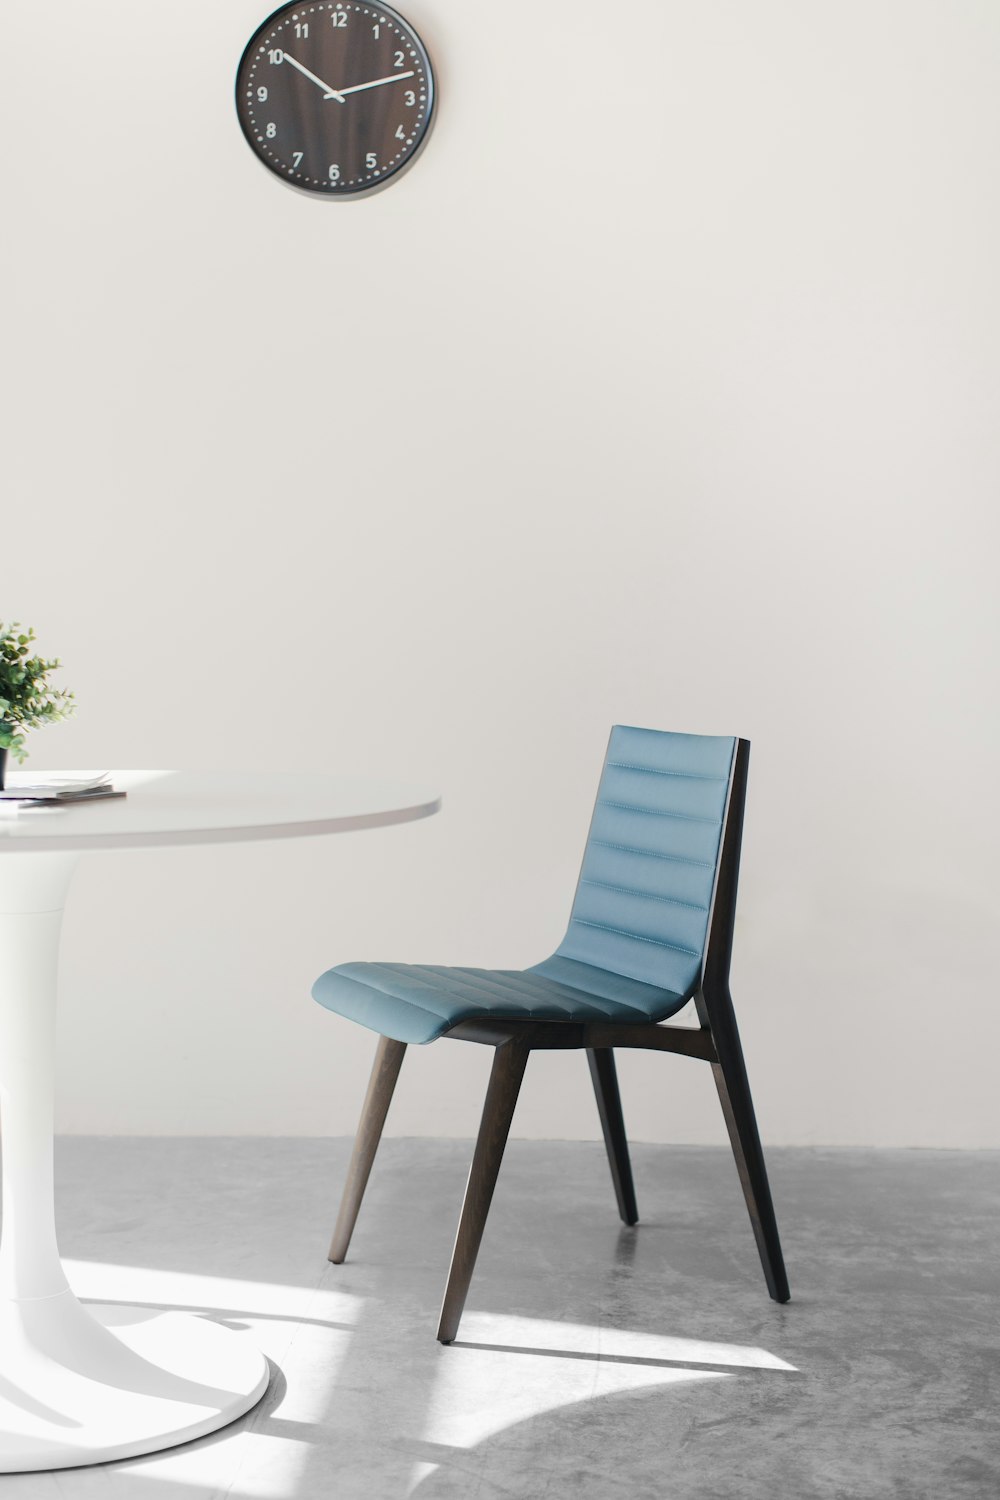 Chaise en bois bleu à côté d’une table blanche